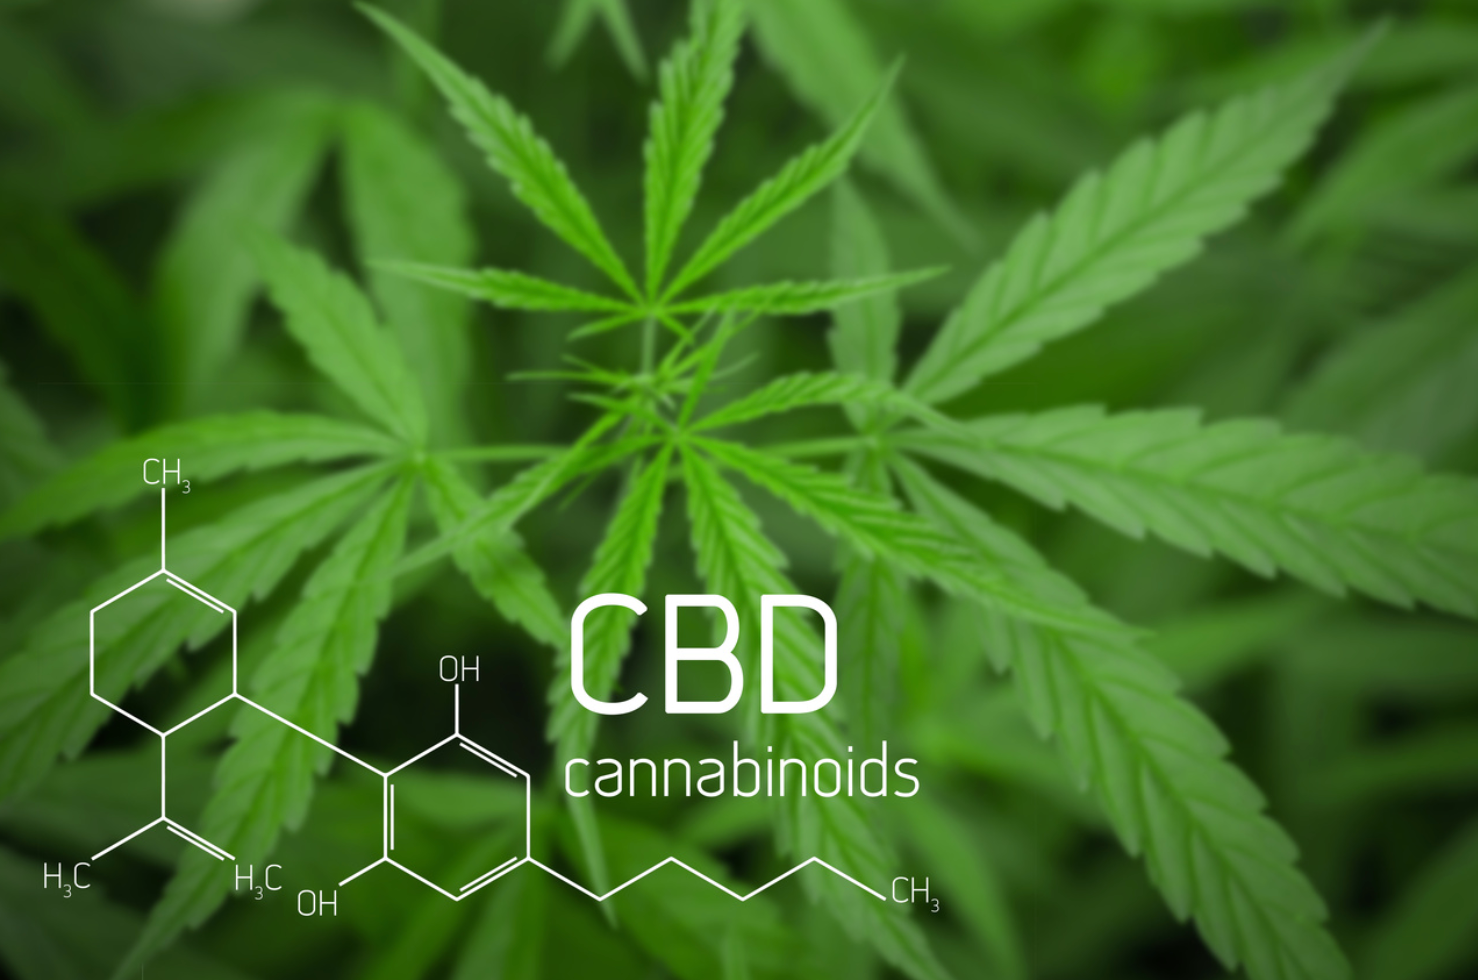 Studies Suggest Cannabinoid Metabolites Result in Harmful Drug Interactions